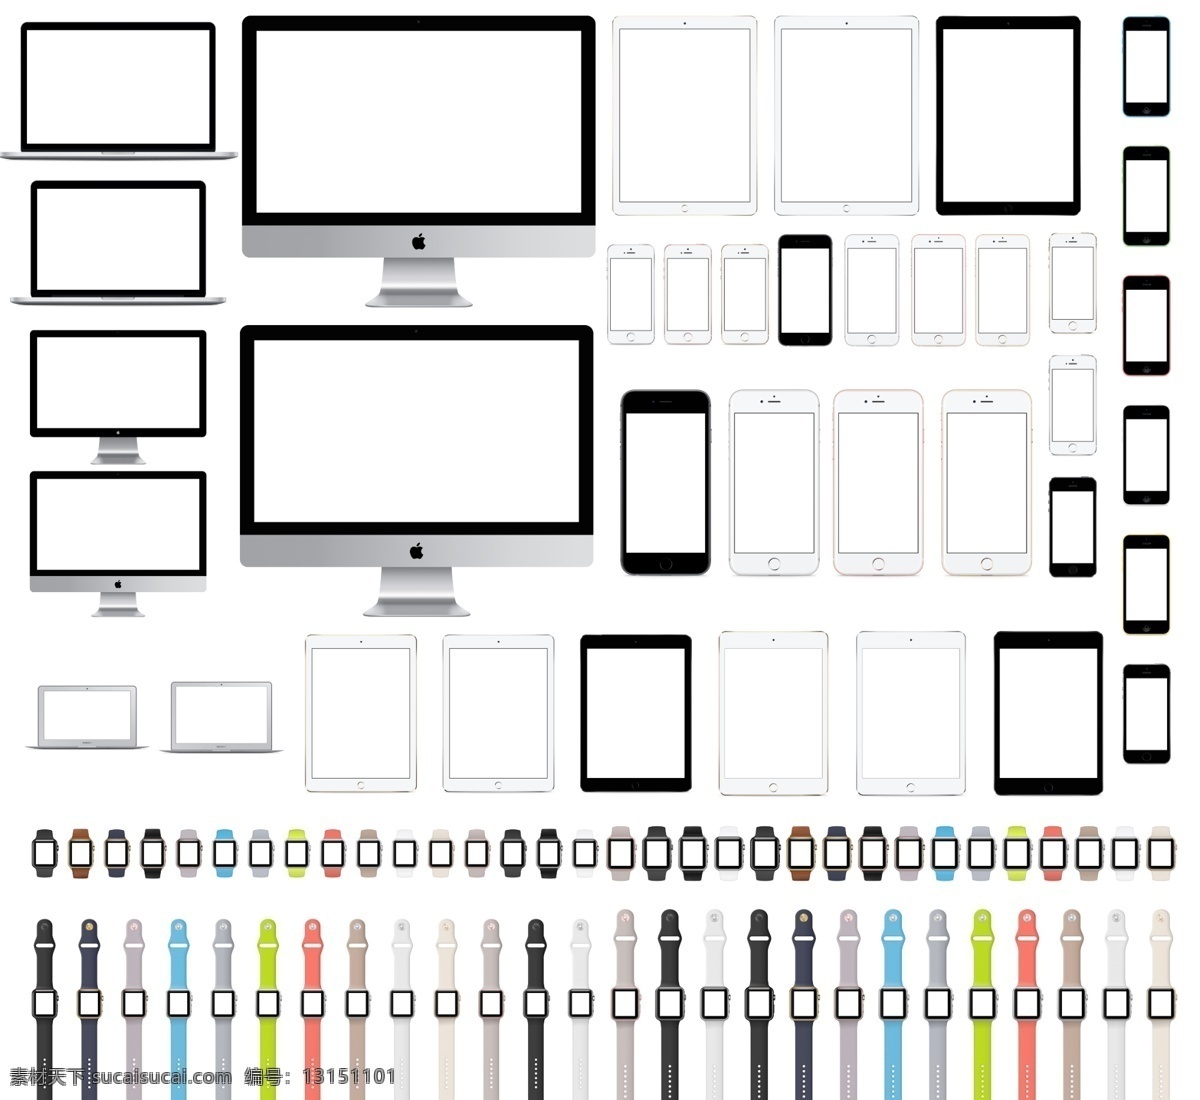 苹果 手机 产品 设备 高清 矢量图 iphone 苹果手机 平板电脑 ipad ios iphonex mac 电脑样机 手机样机 iphonexs